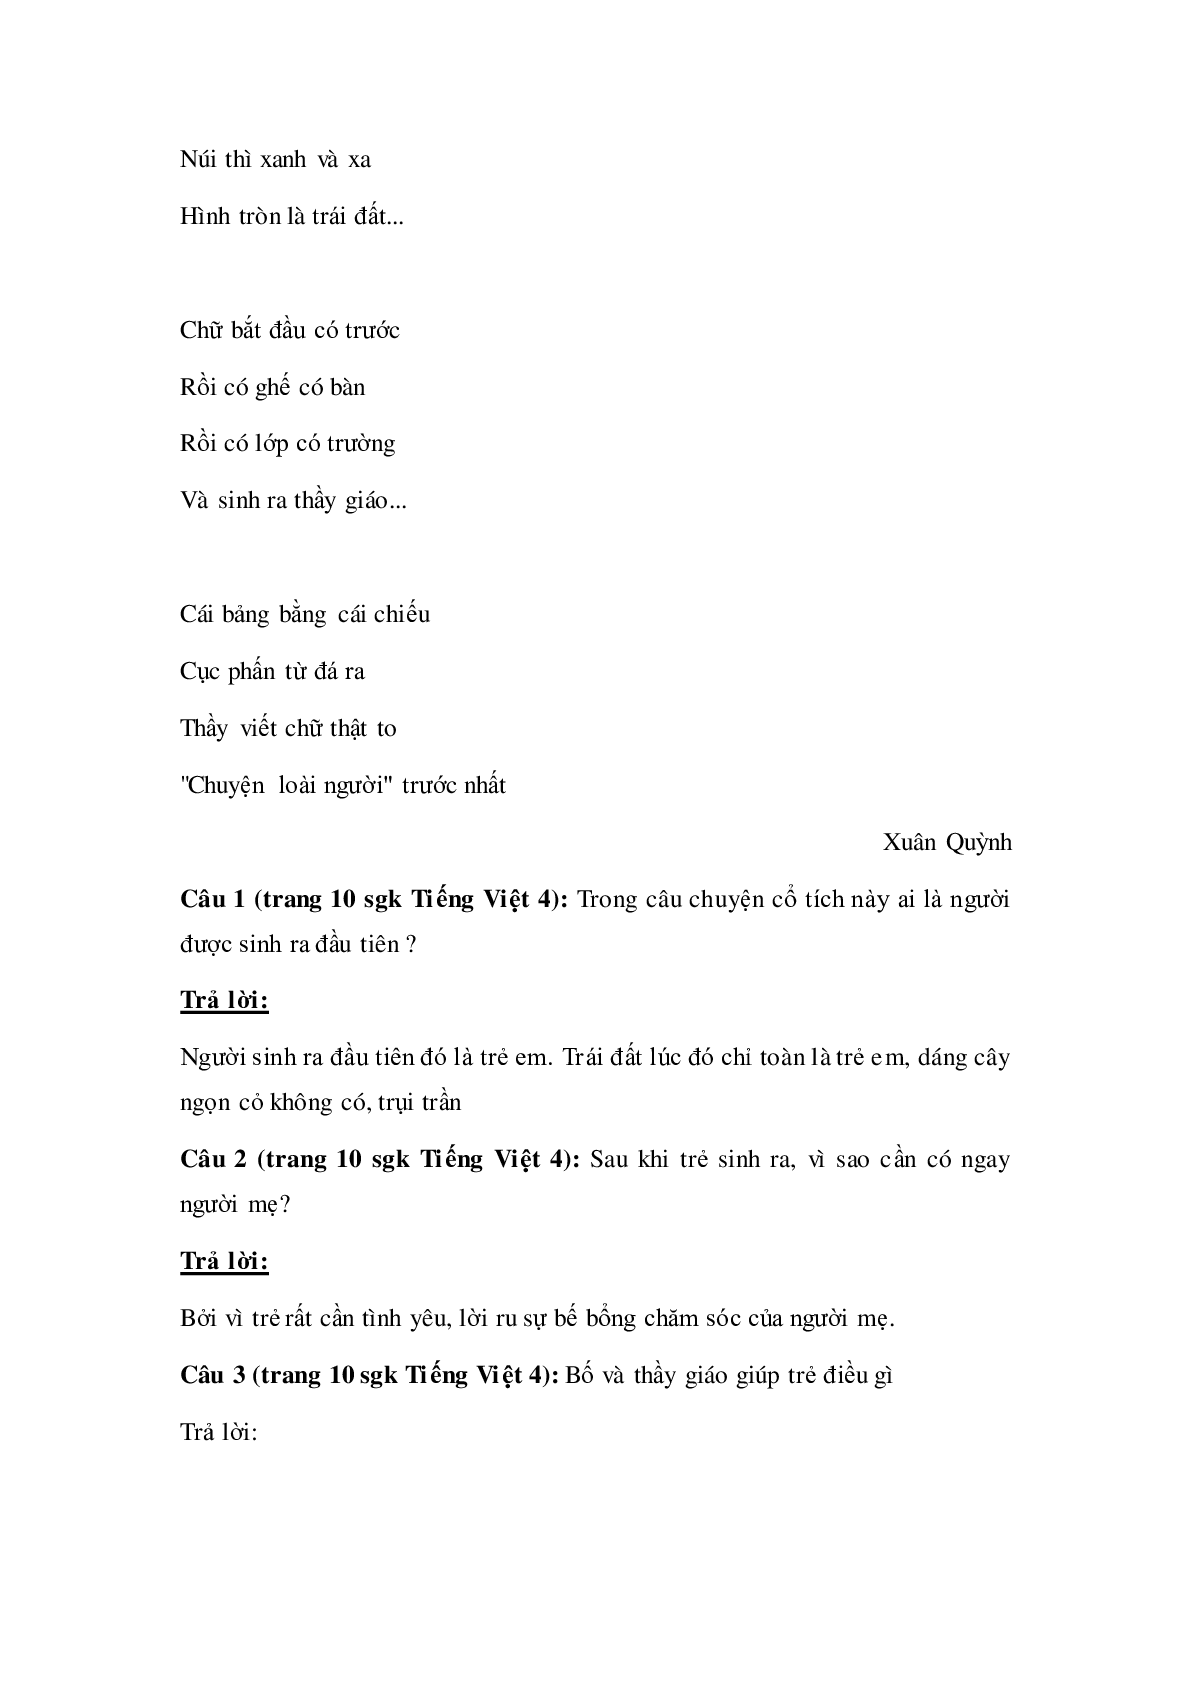 Soạn Tiếng Việt lớp 4: Tập đọc: Chuyện cổ tích về loài người mới nhất (trang 2)